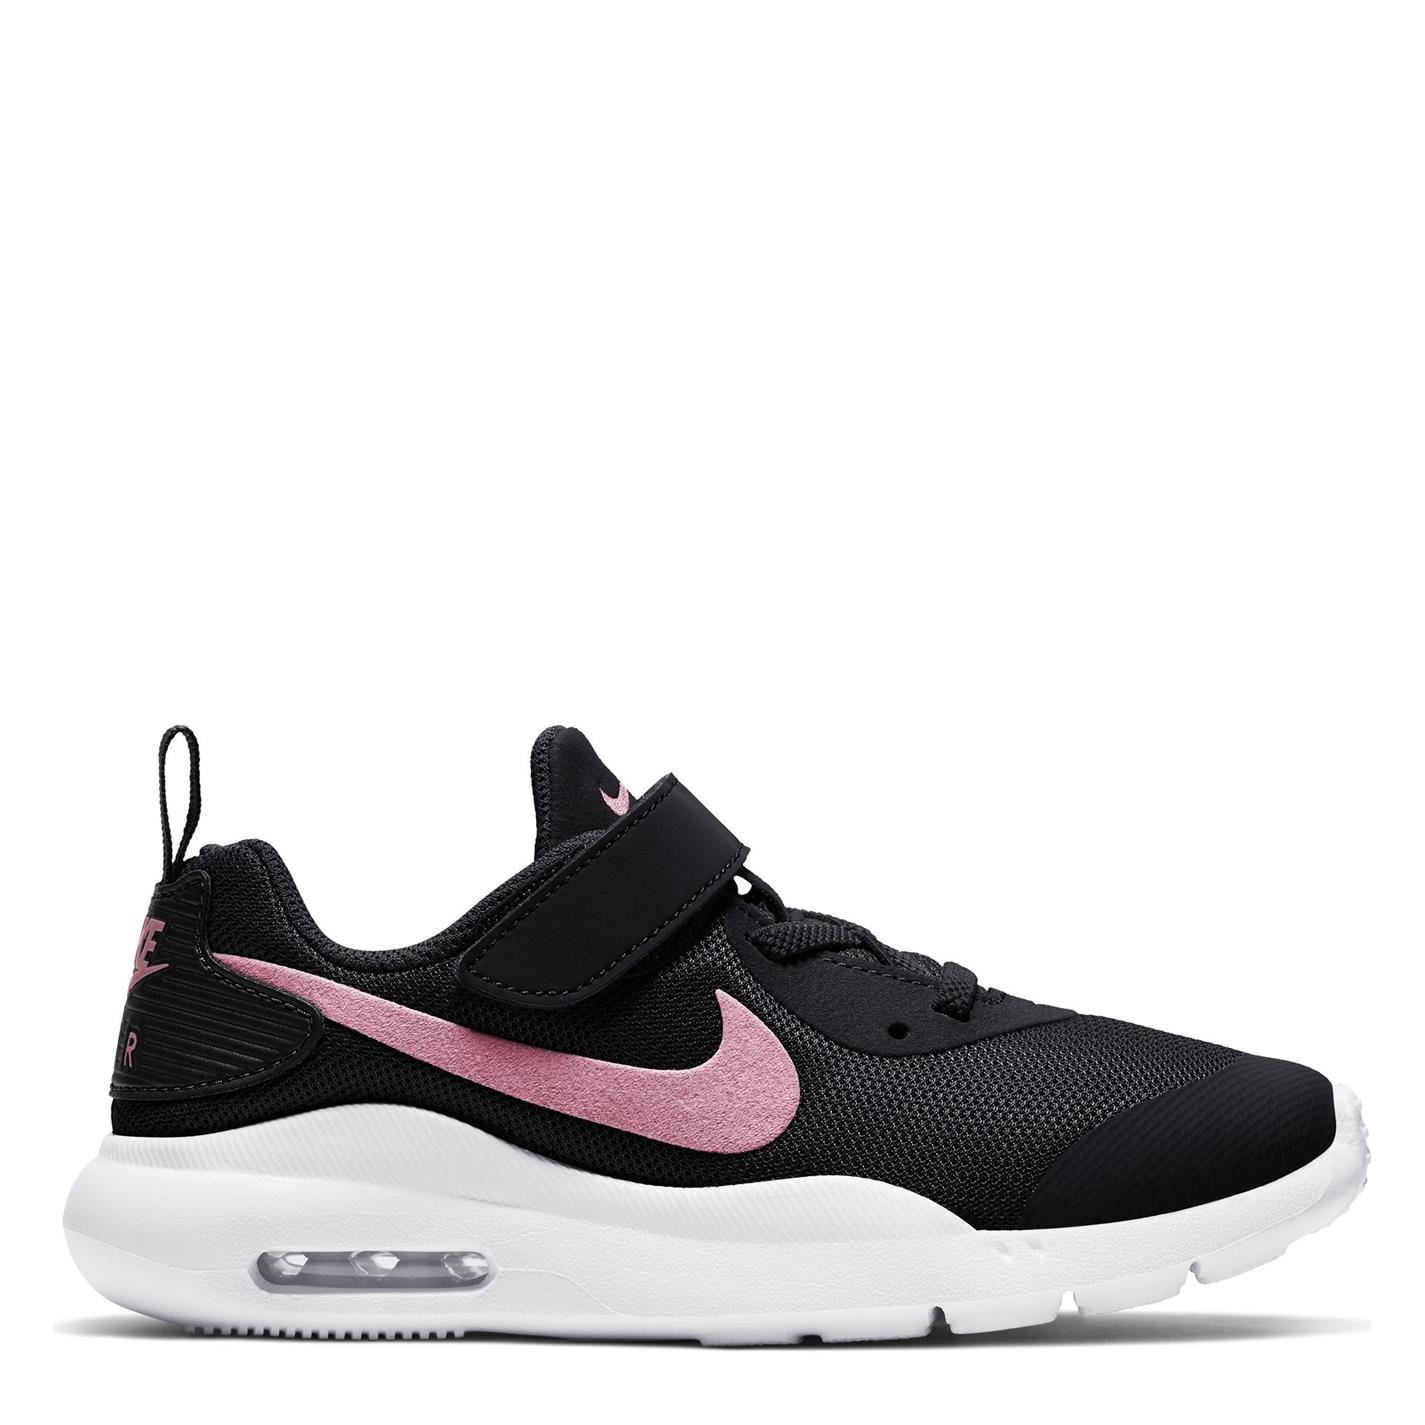 Adidasi sport Nike Air Max Oketo pentru fete negru roz